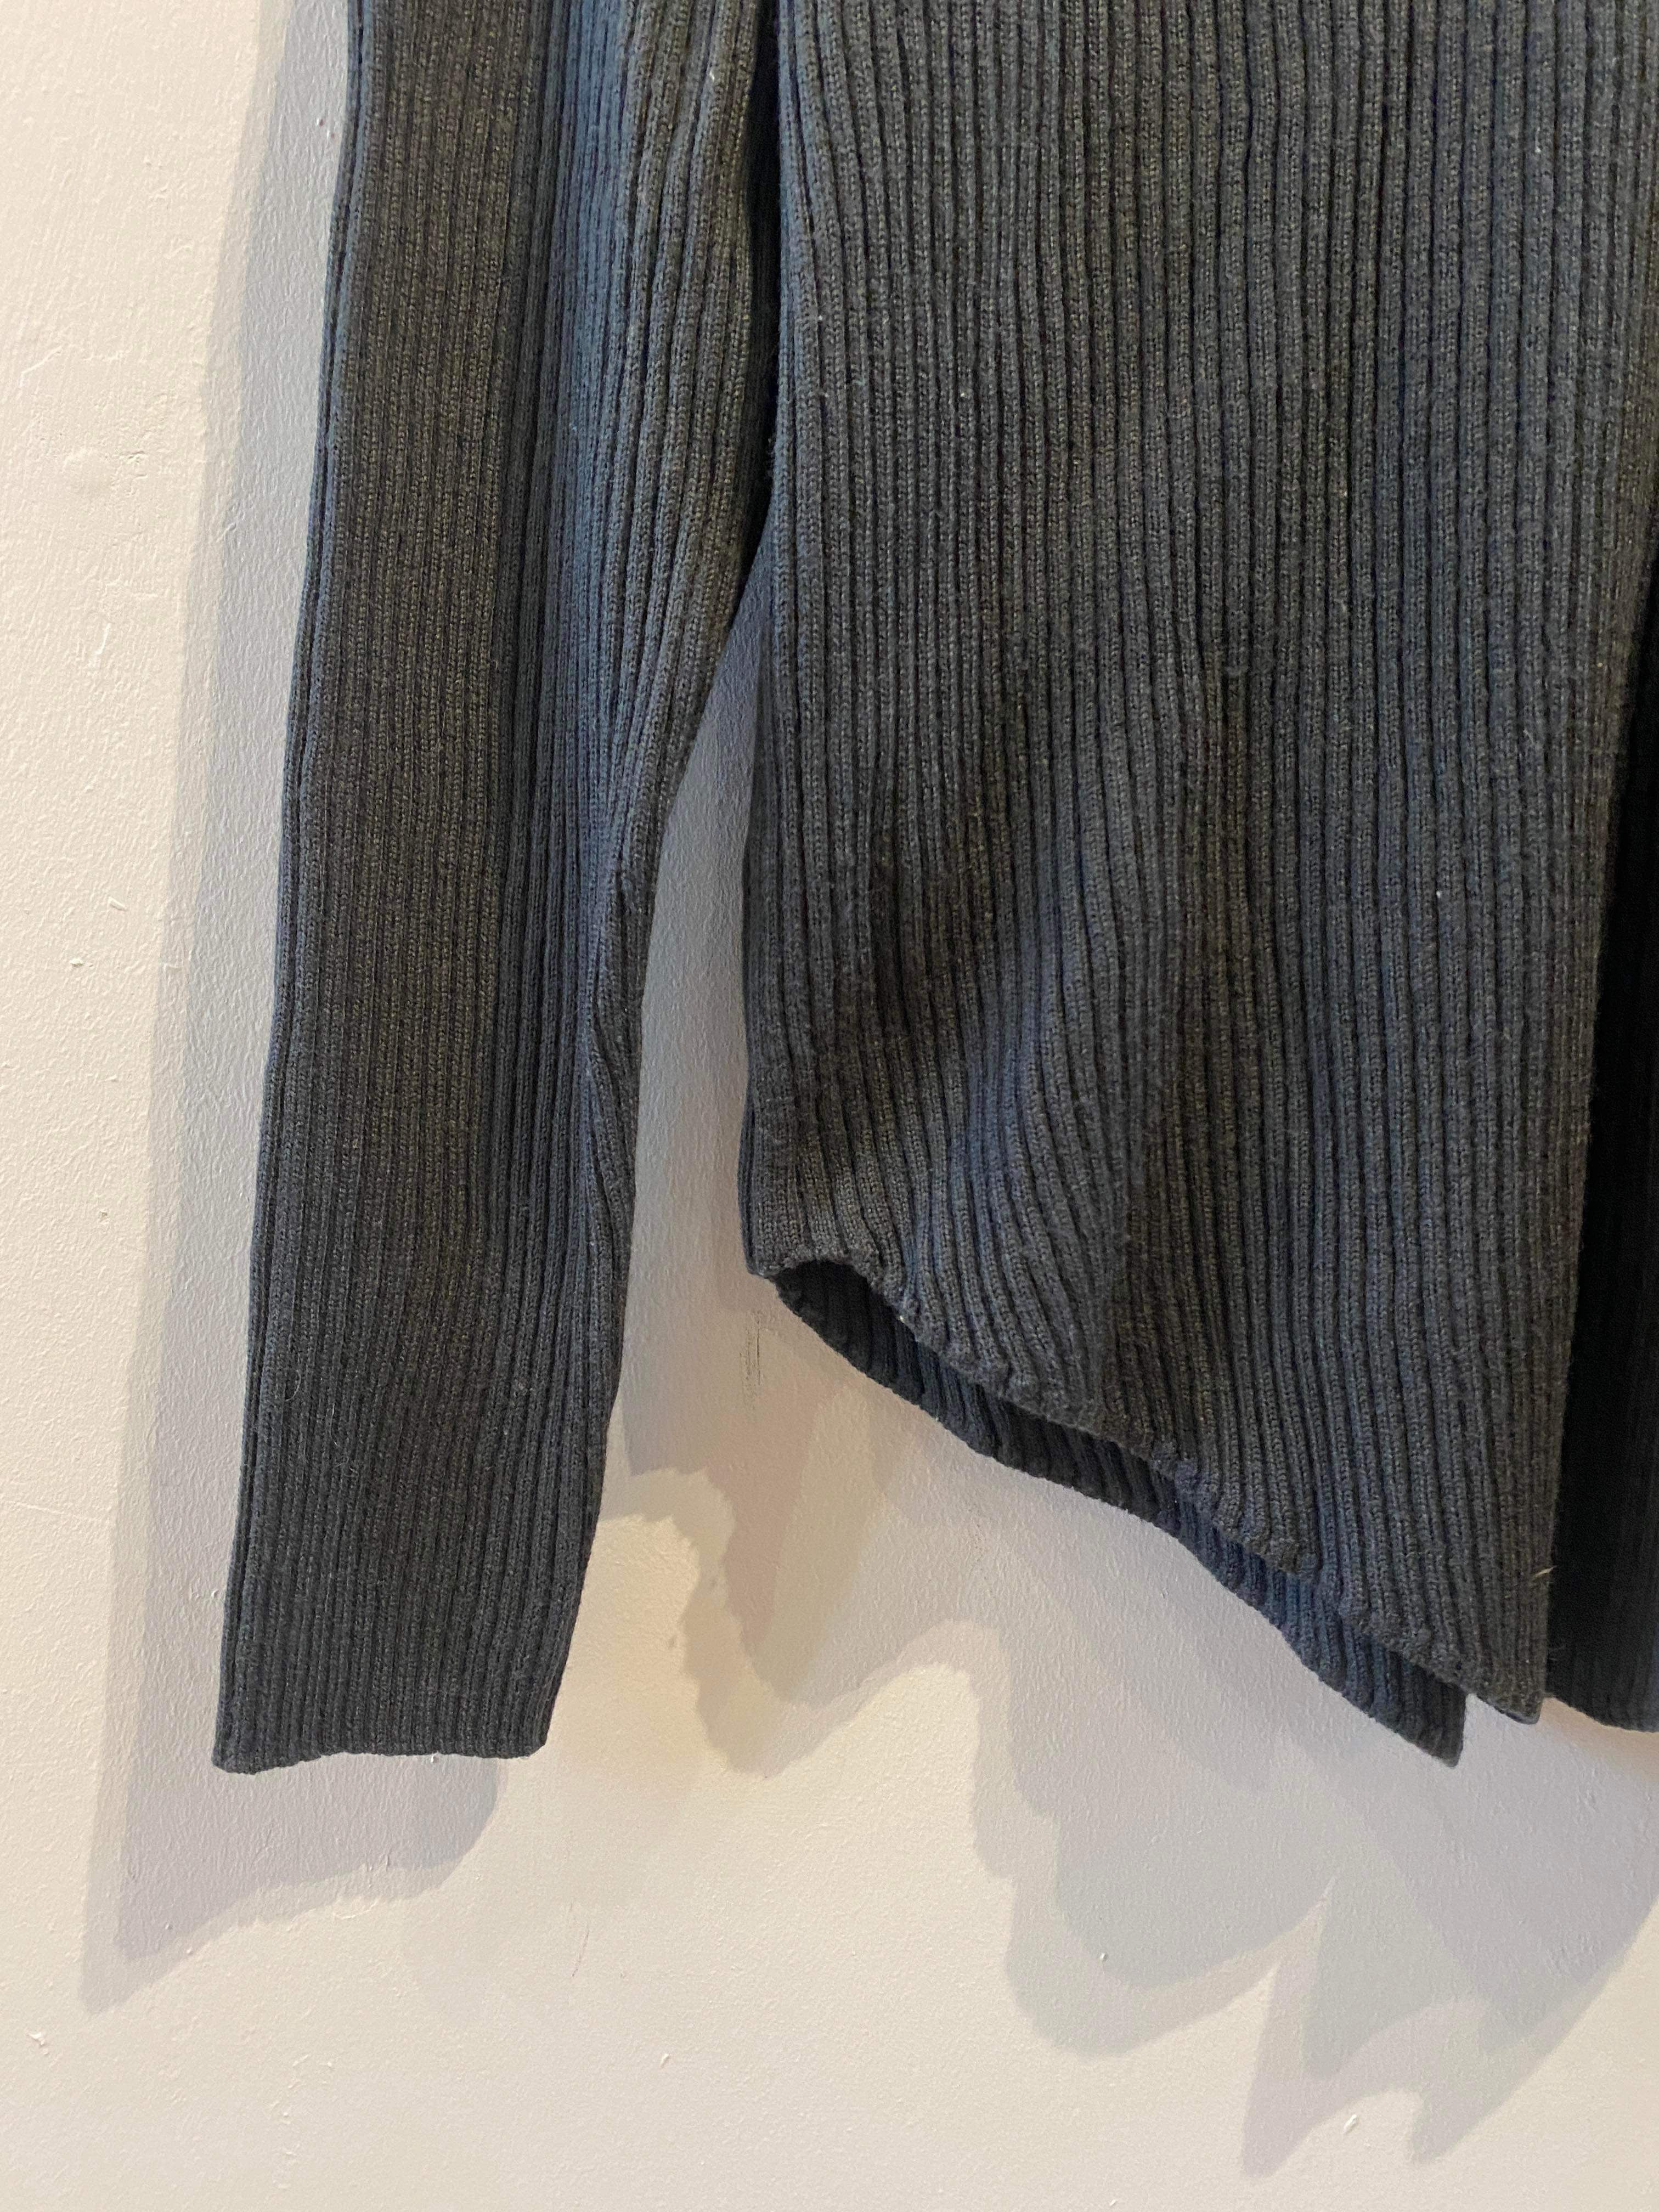 Iro Paris - Sweater - Size: L